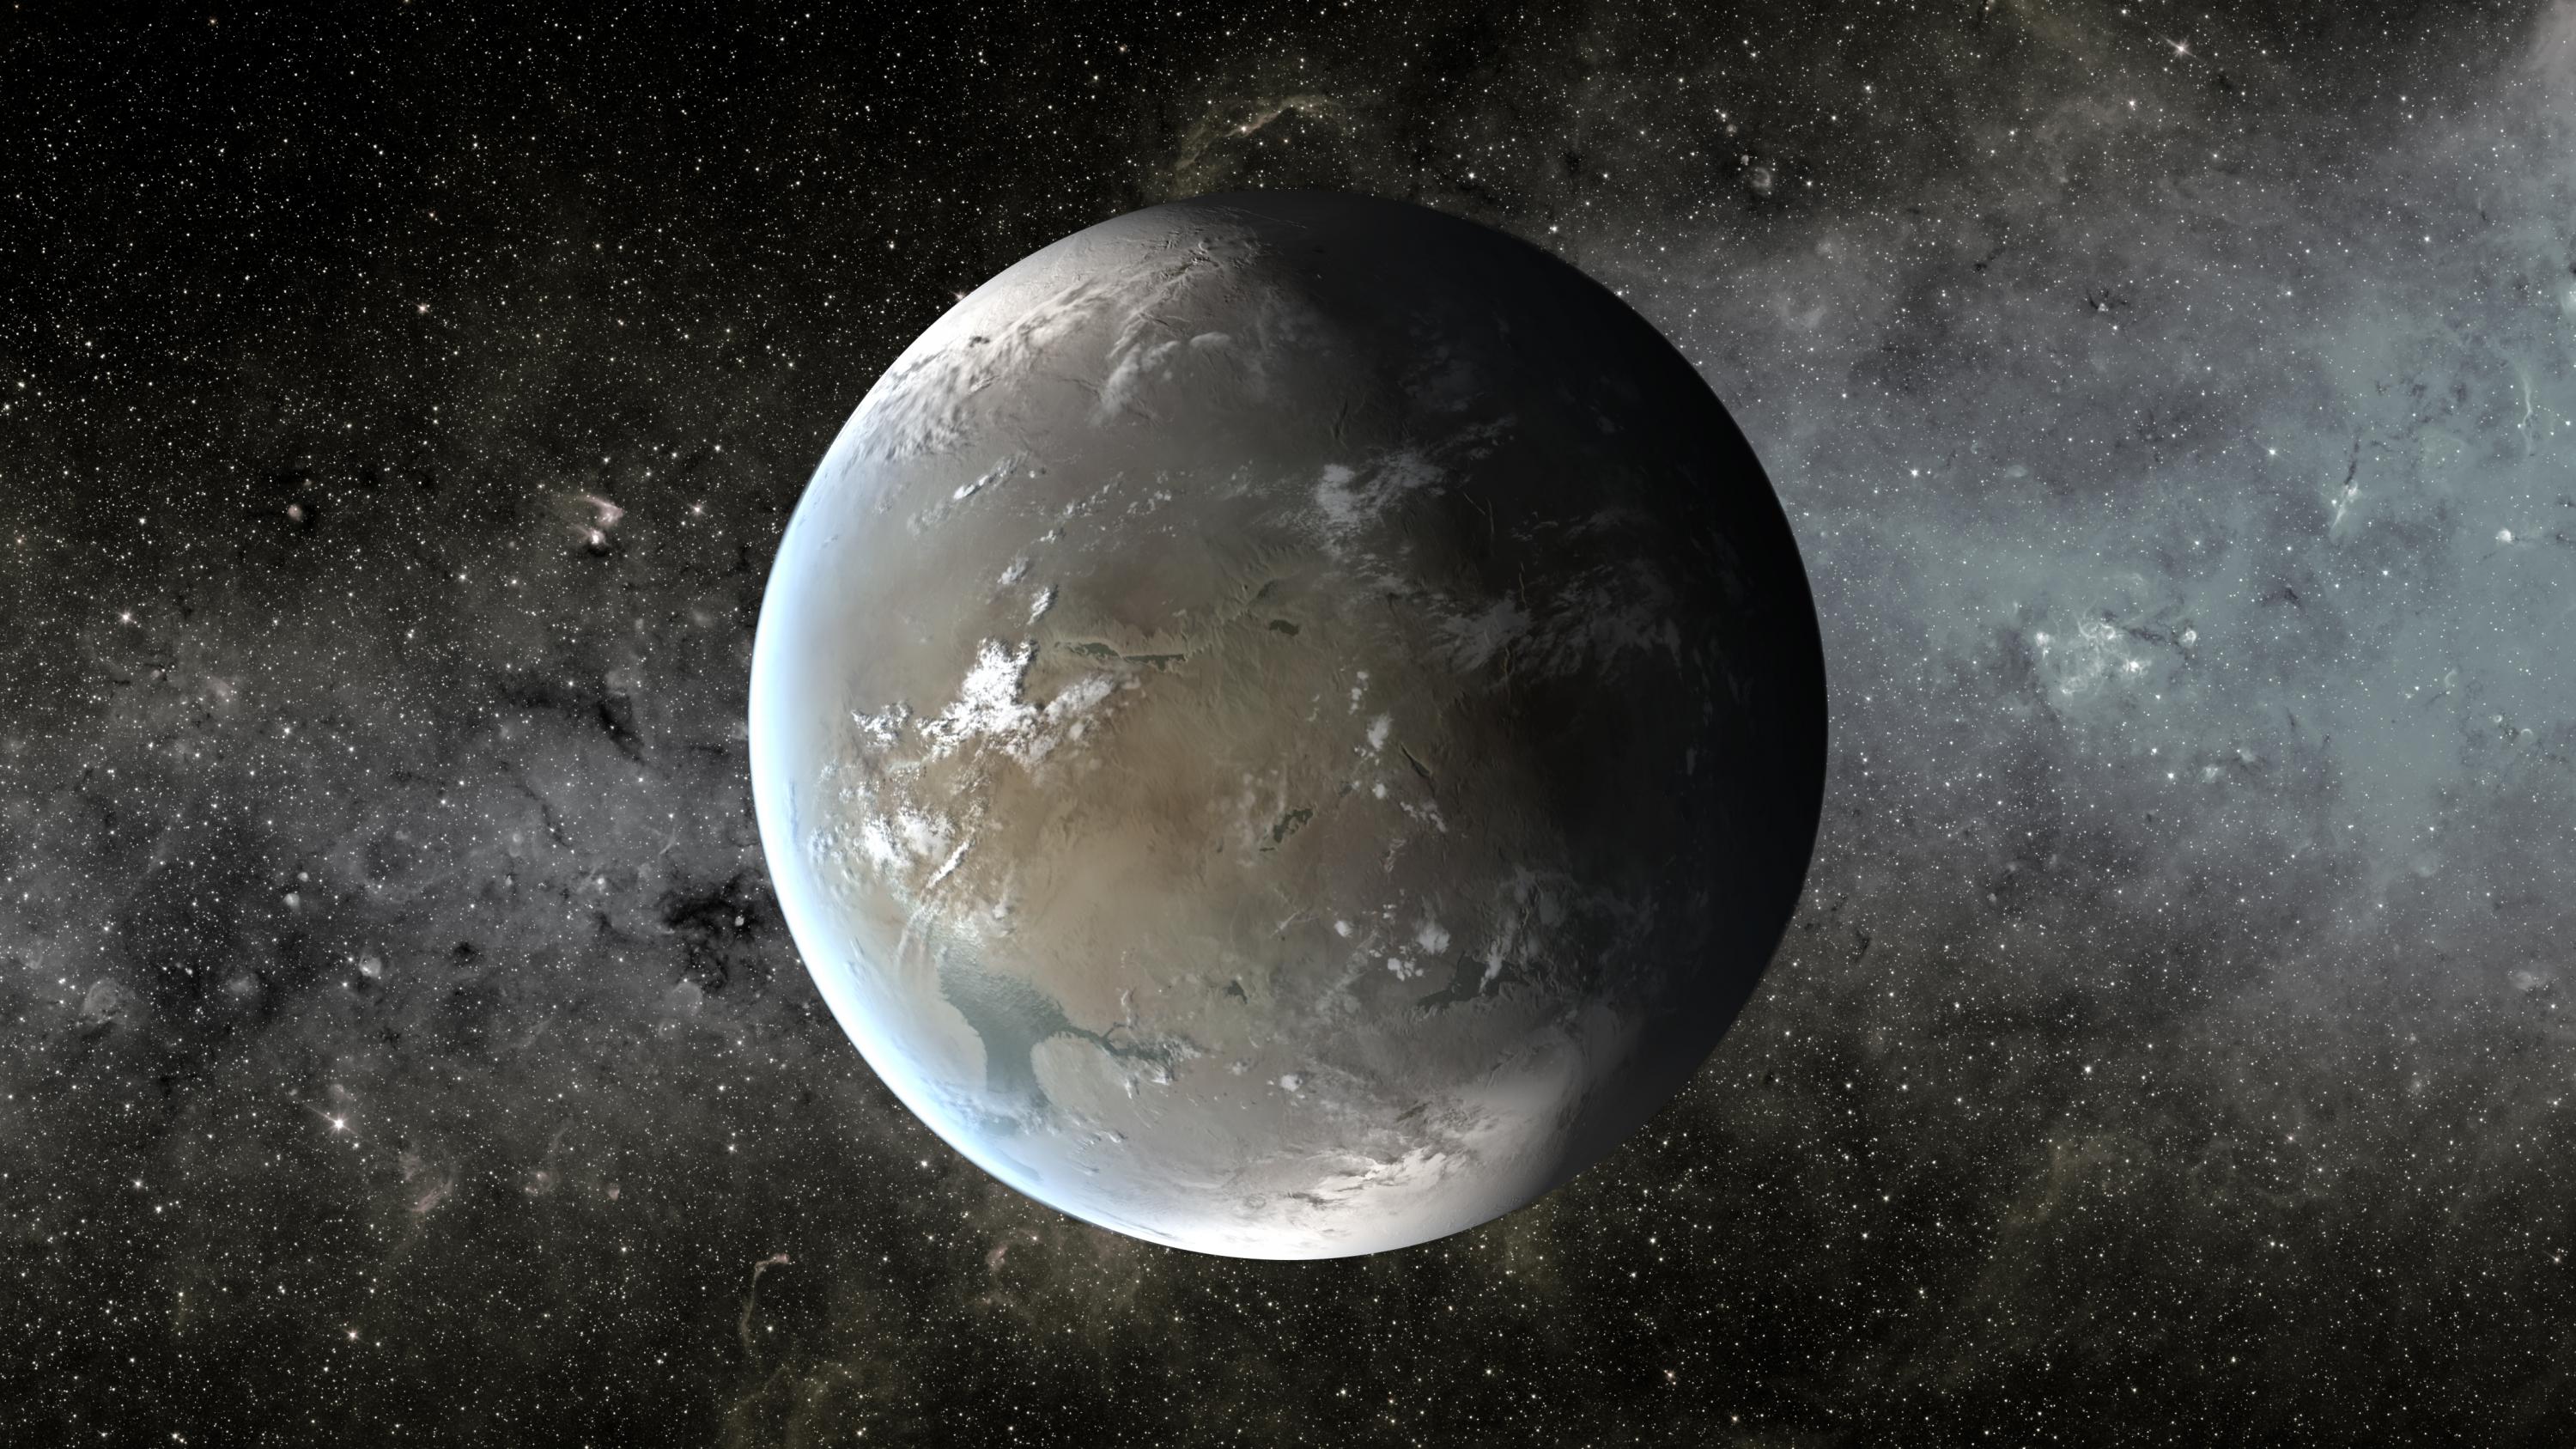 An artist's depiction of Kepler-62f. Image credit: NASA Ames/JPL-Caltech/T. Pyle